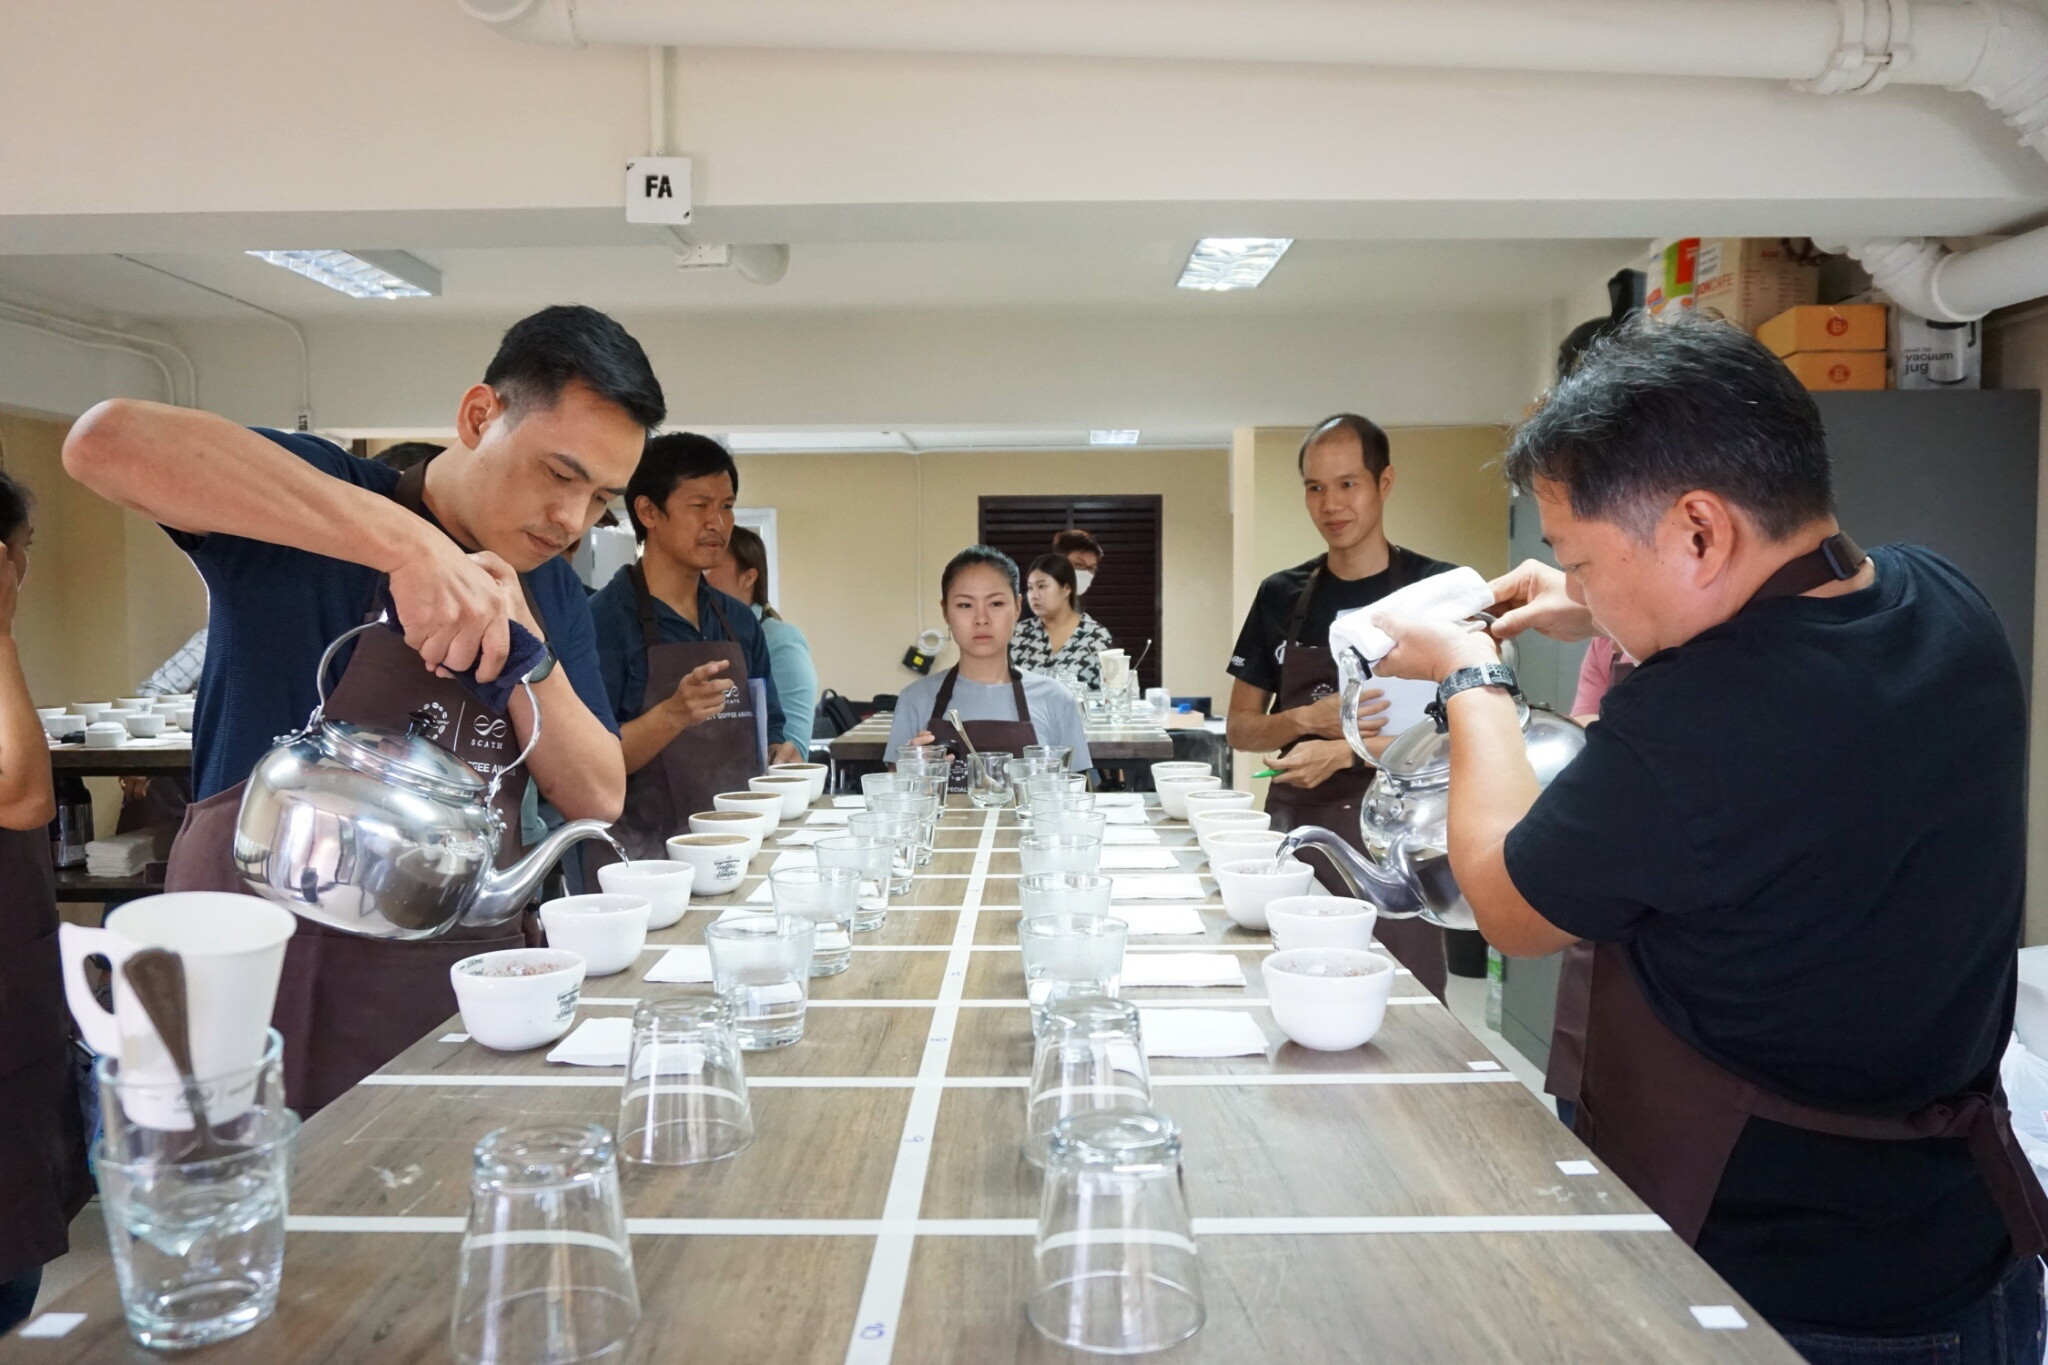 สมาคมกาแฟพิเศษไทย สร้างประวัติศาสตร์วงการกาแฟ จัดประมูลออนไลน์ “เมล็ดกาแฟไทย” ทำรายได้ยอดประมูลกว่า 3 ล้านบาท สูงสุดเป็นประวัติการณ์